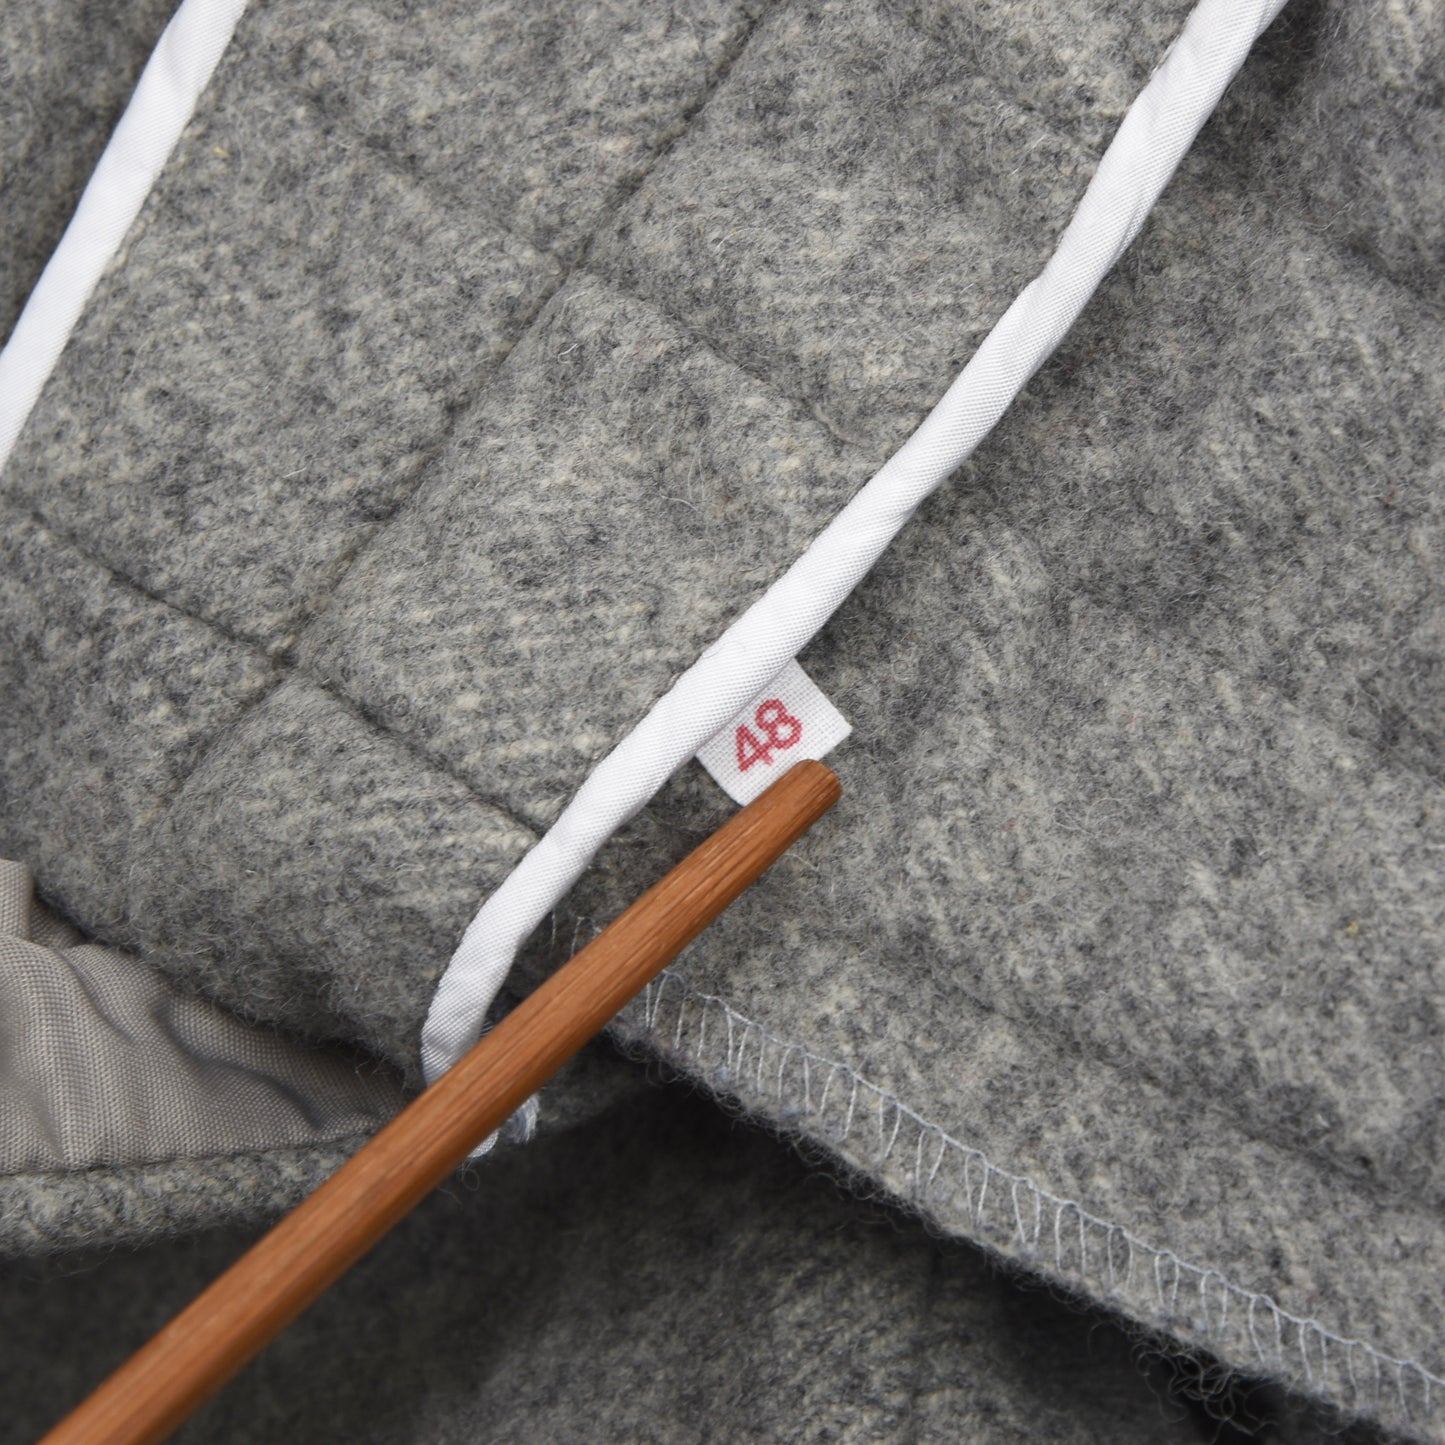 Orig. Dachstein Wool Knickerbockers/Breeks Size 48 - Grey